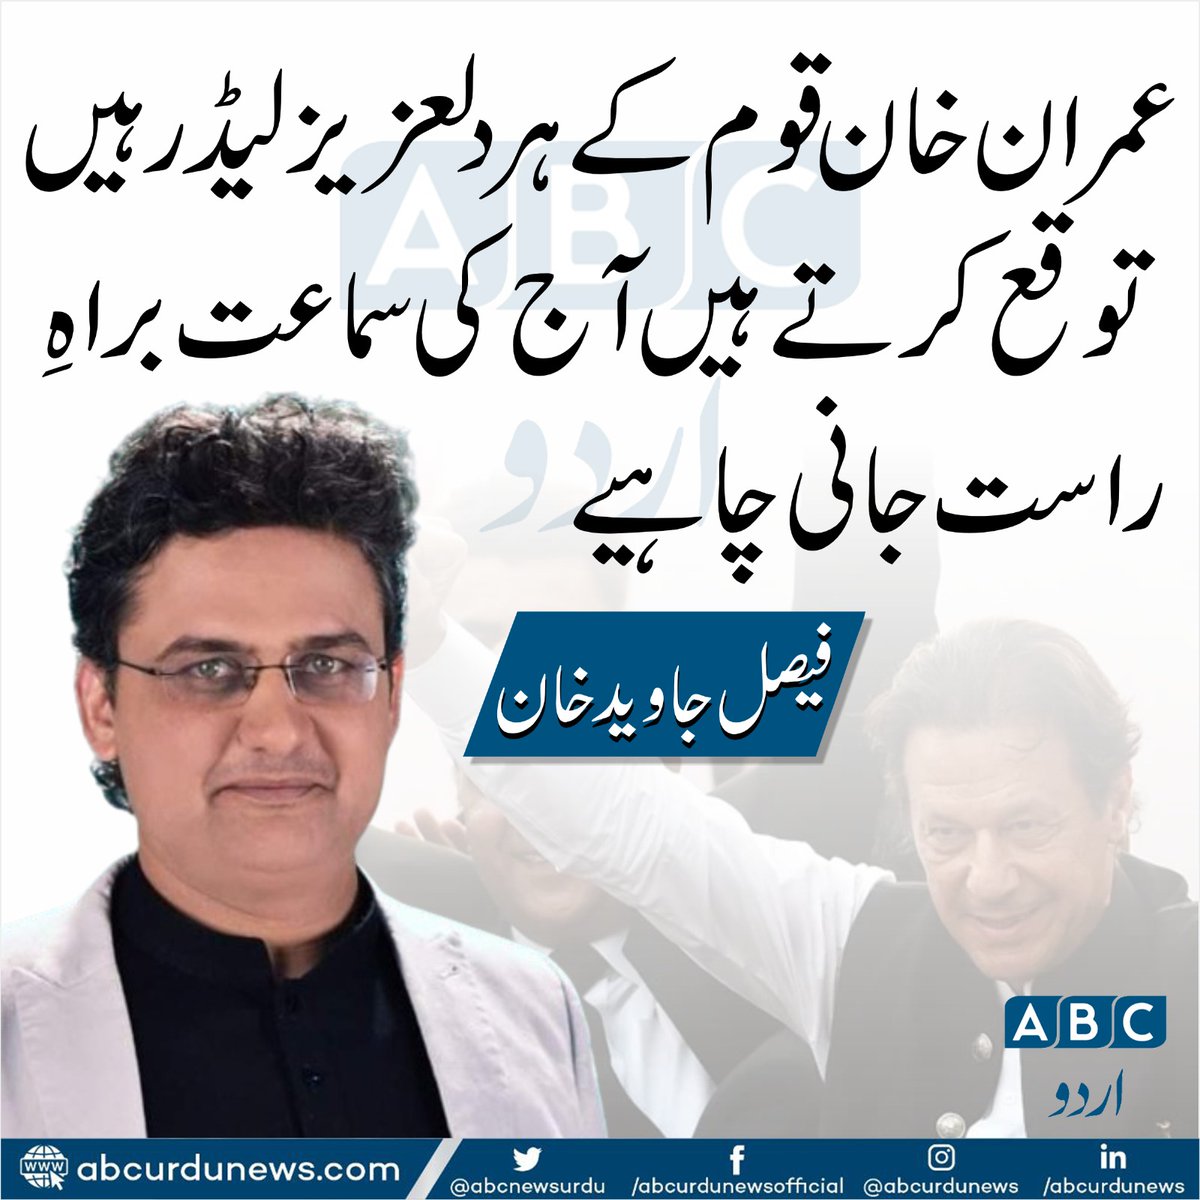 عمران خان قوم کے ہر دلعزیز لیڈر ہیں توقع کرتے ہیں آج کی سماعت براہِ راست جانی چاہیے. فیصل جاوید خان
@FaisalJavedKhan 
#imrankhan